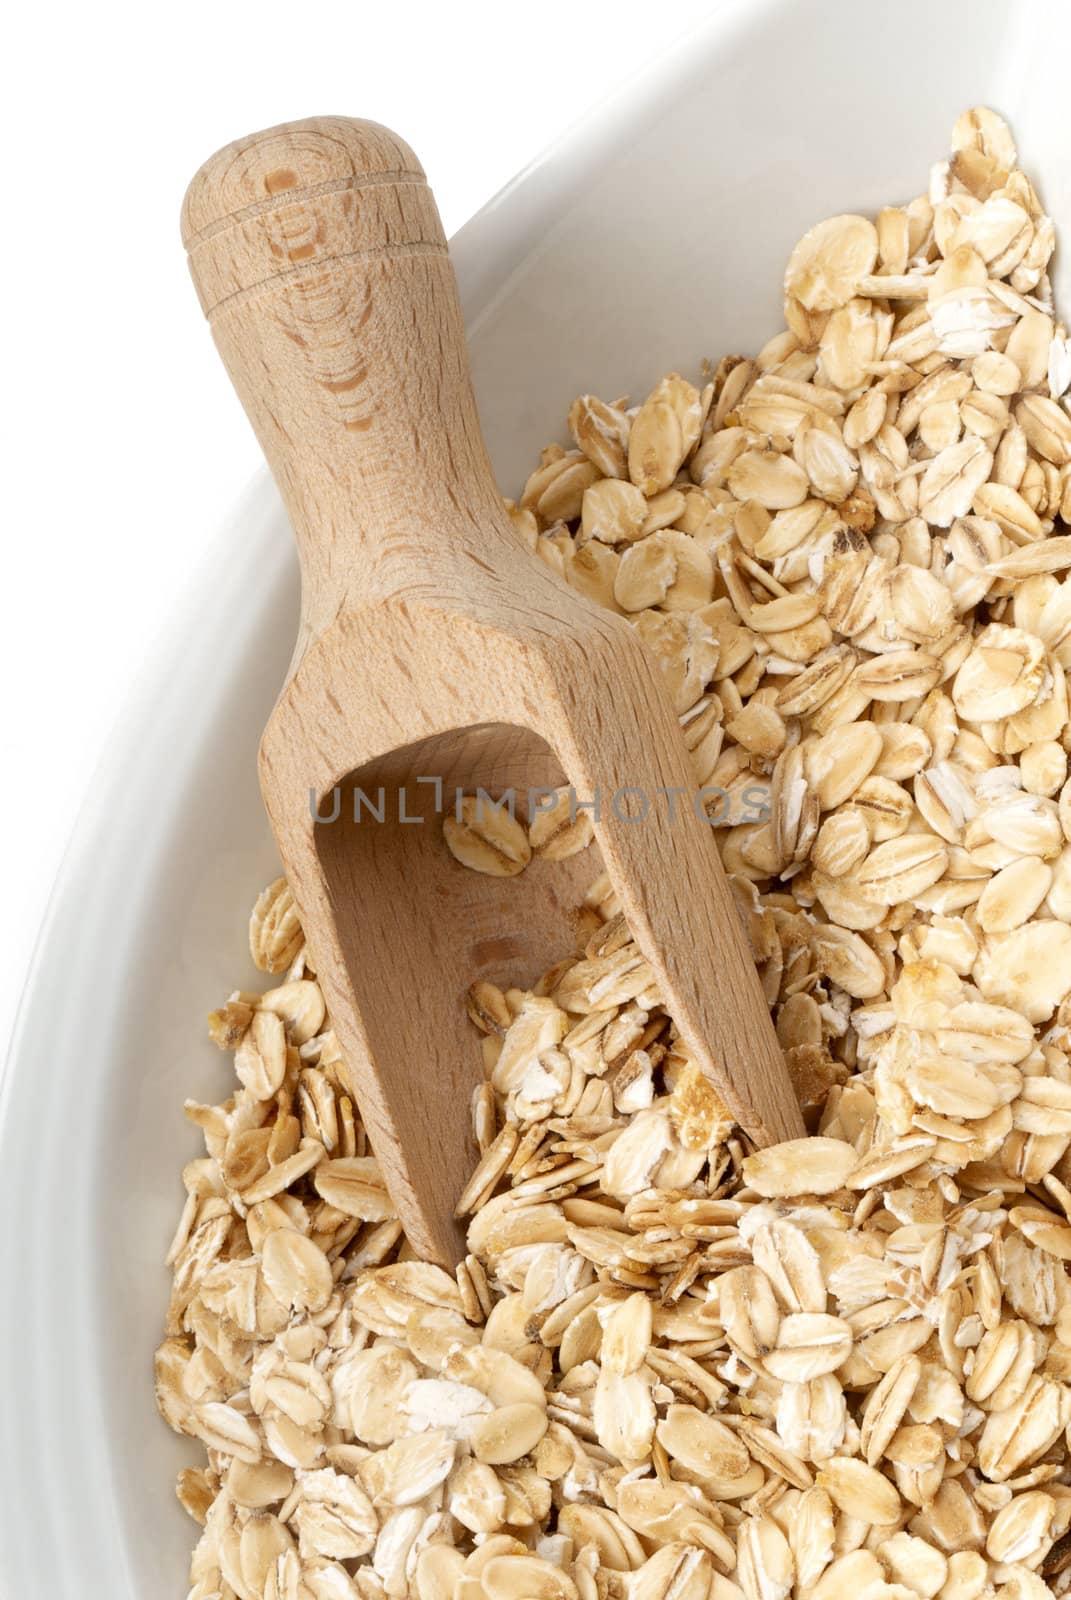 Seeds of oats by Kamensky